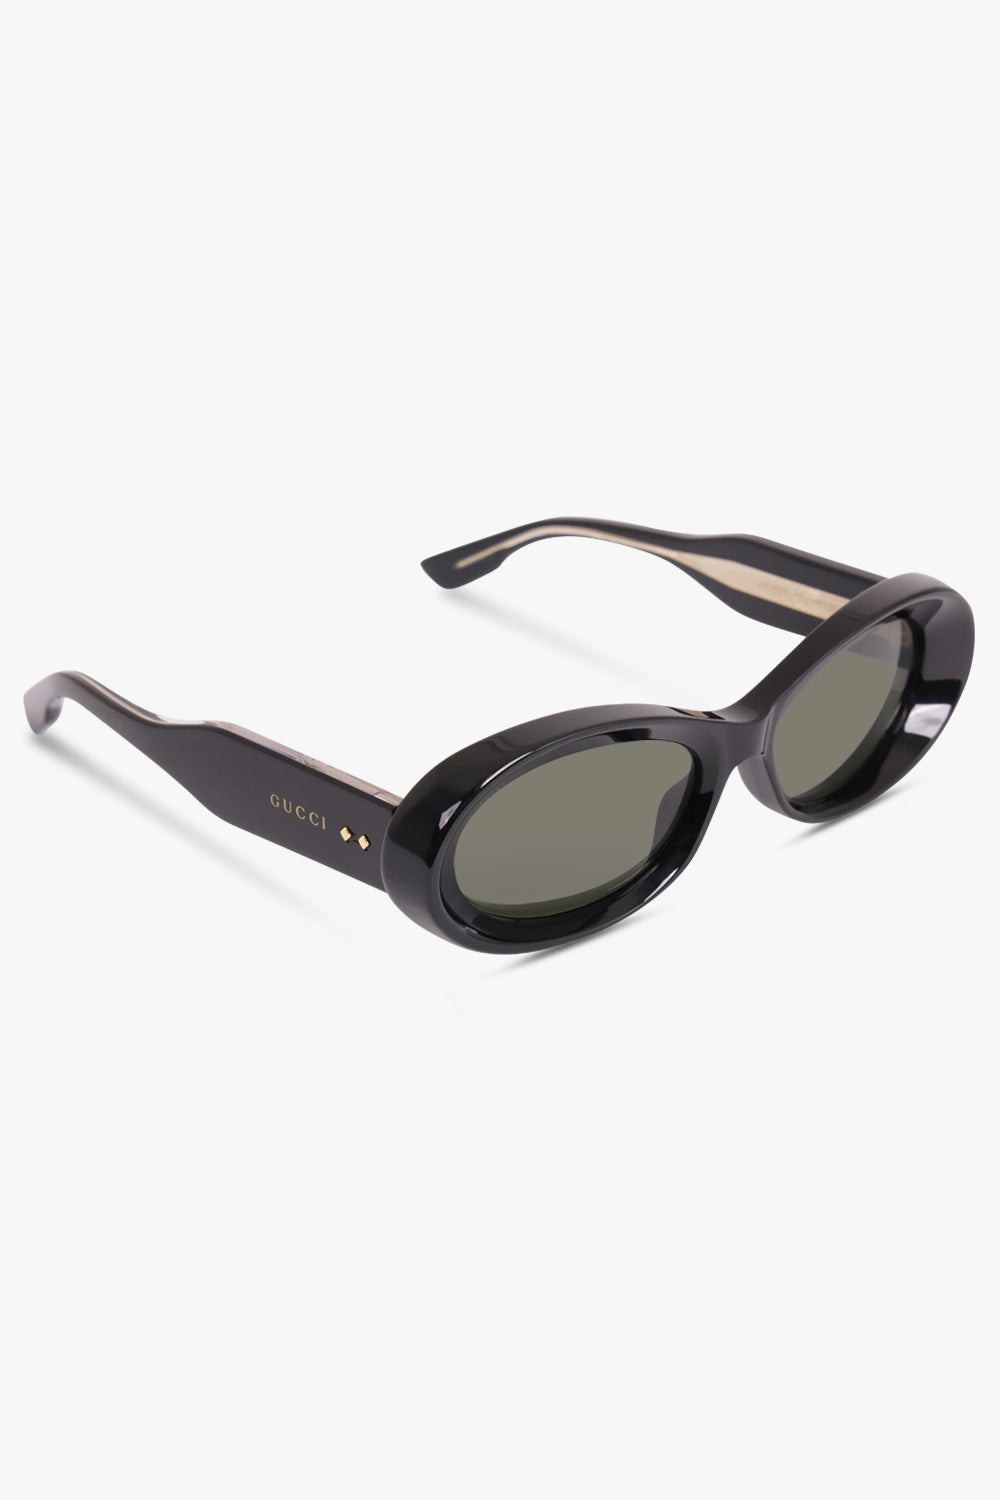 GUCCI ACCESSORIES BLACK / BLACK GG1527S 54 Oval Frame Sunglasses | Black